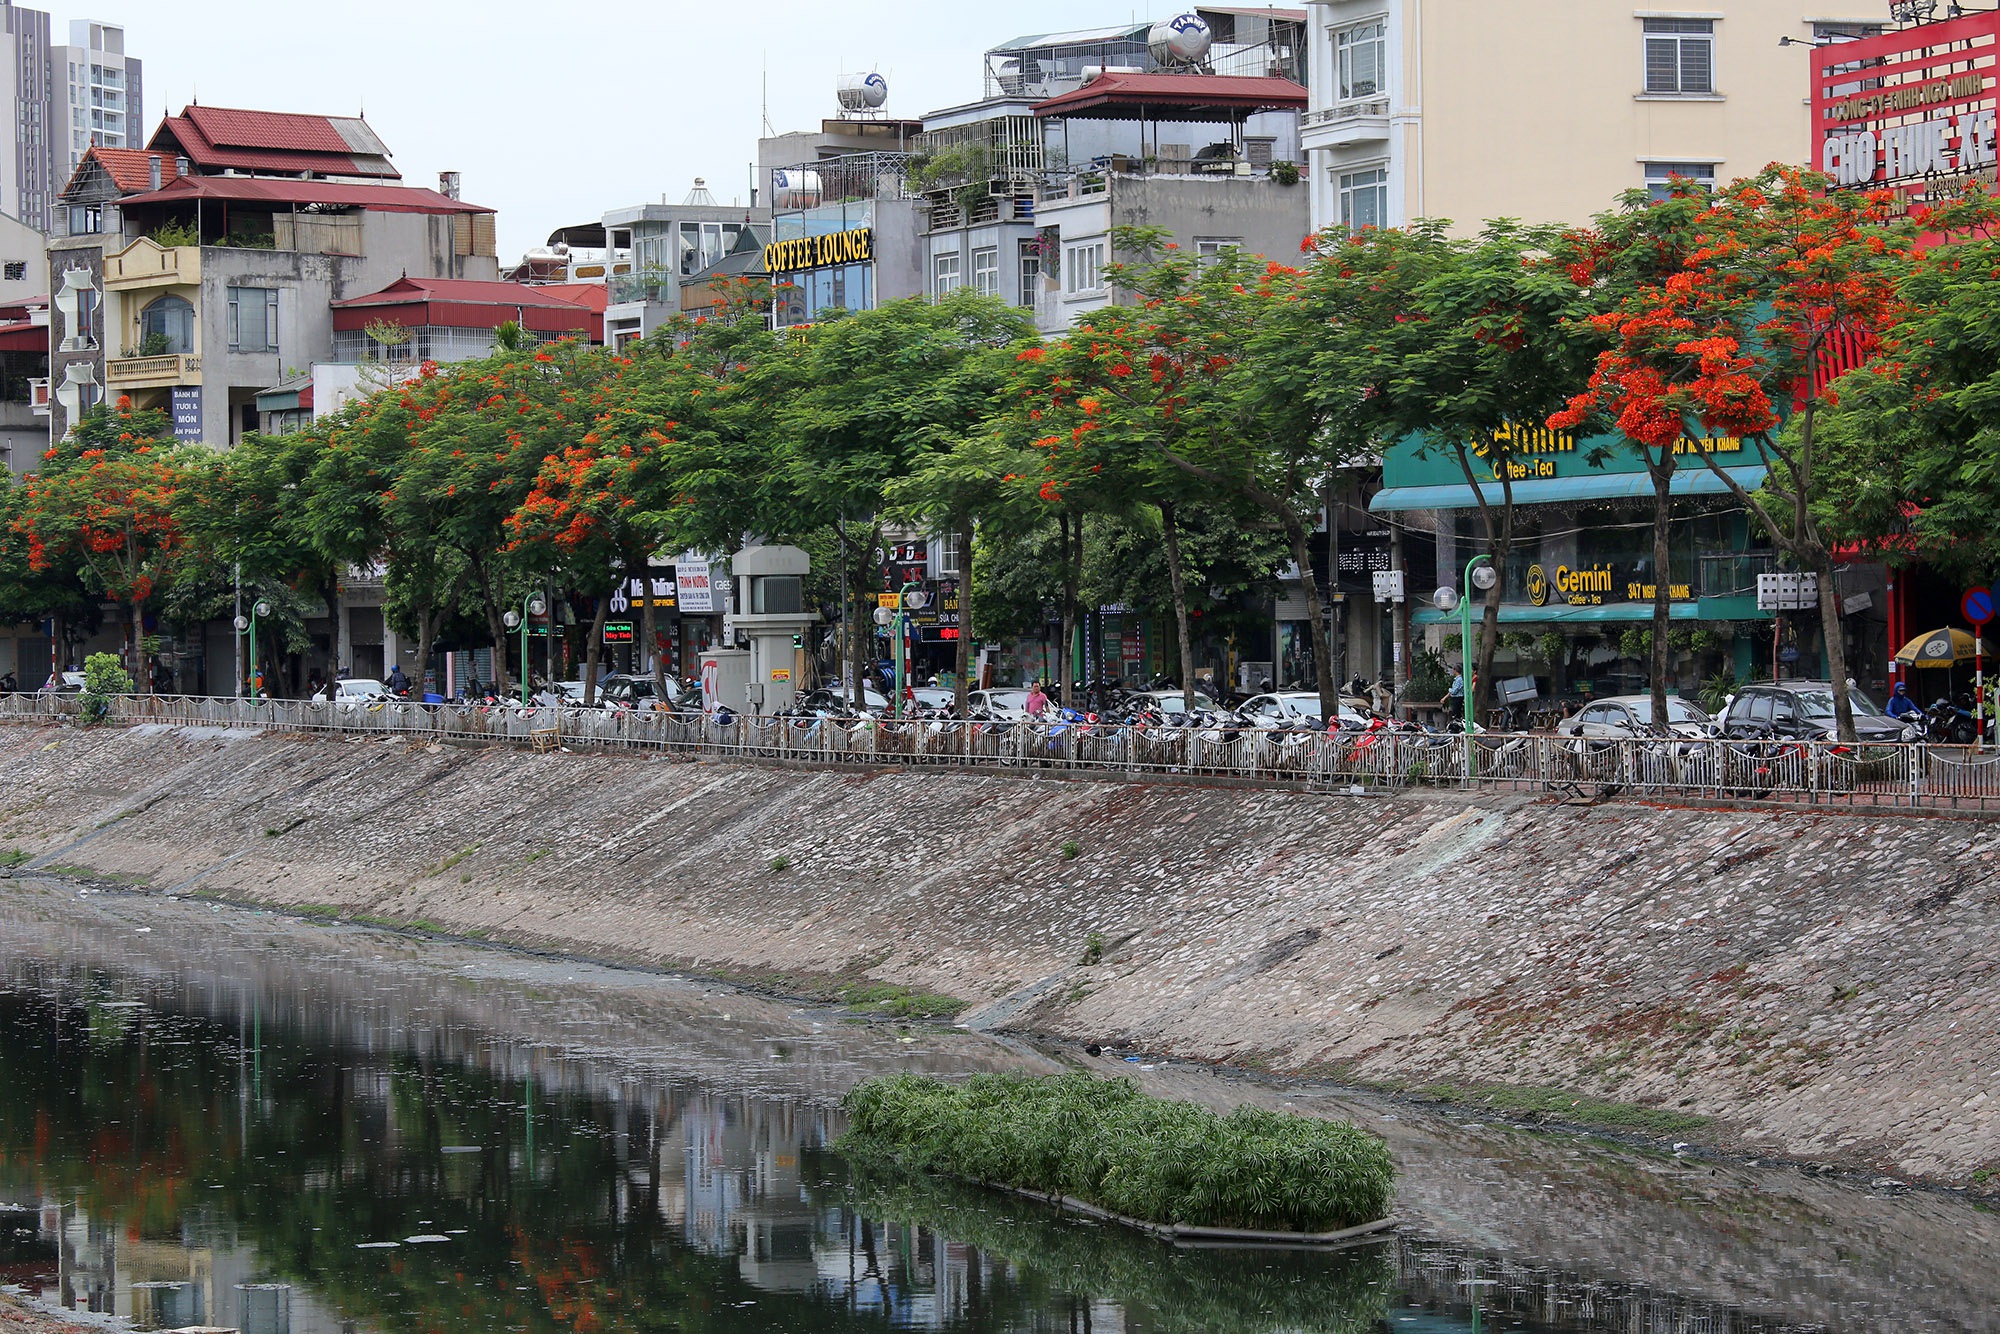  Đây là đoạn đường được trồng cây phượng vĩ nhiều nhất thủ đô. Ngoài ra đường Láng ven sông Tô Lịch cũng được biết đến với hàng cây xà cừ cổ thụ tuyệt đẹp mang lại bóng mát cho người đi đường.